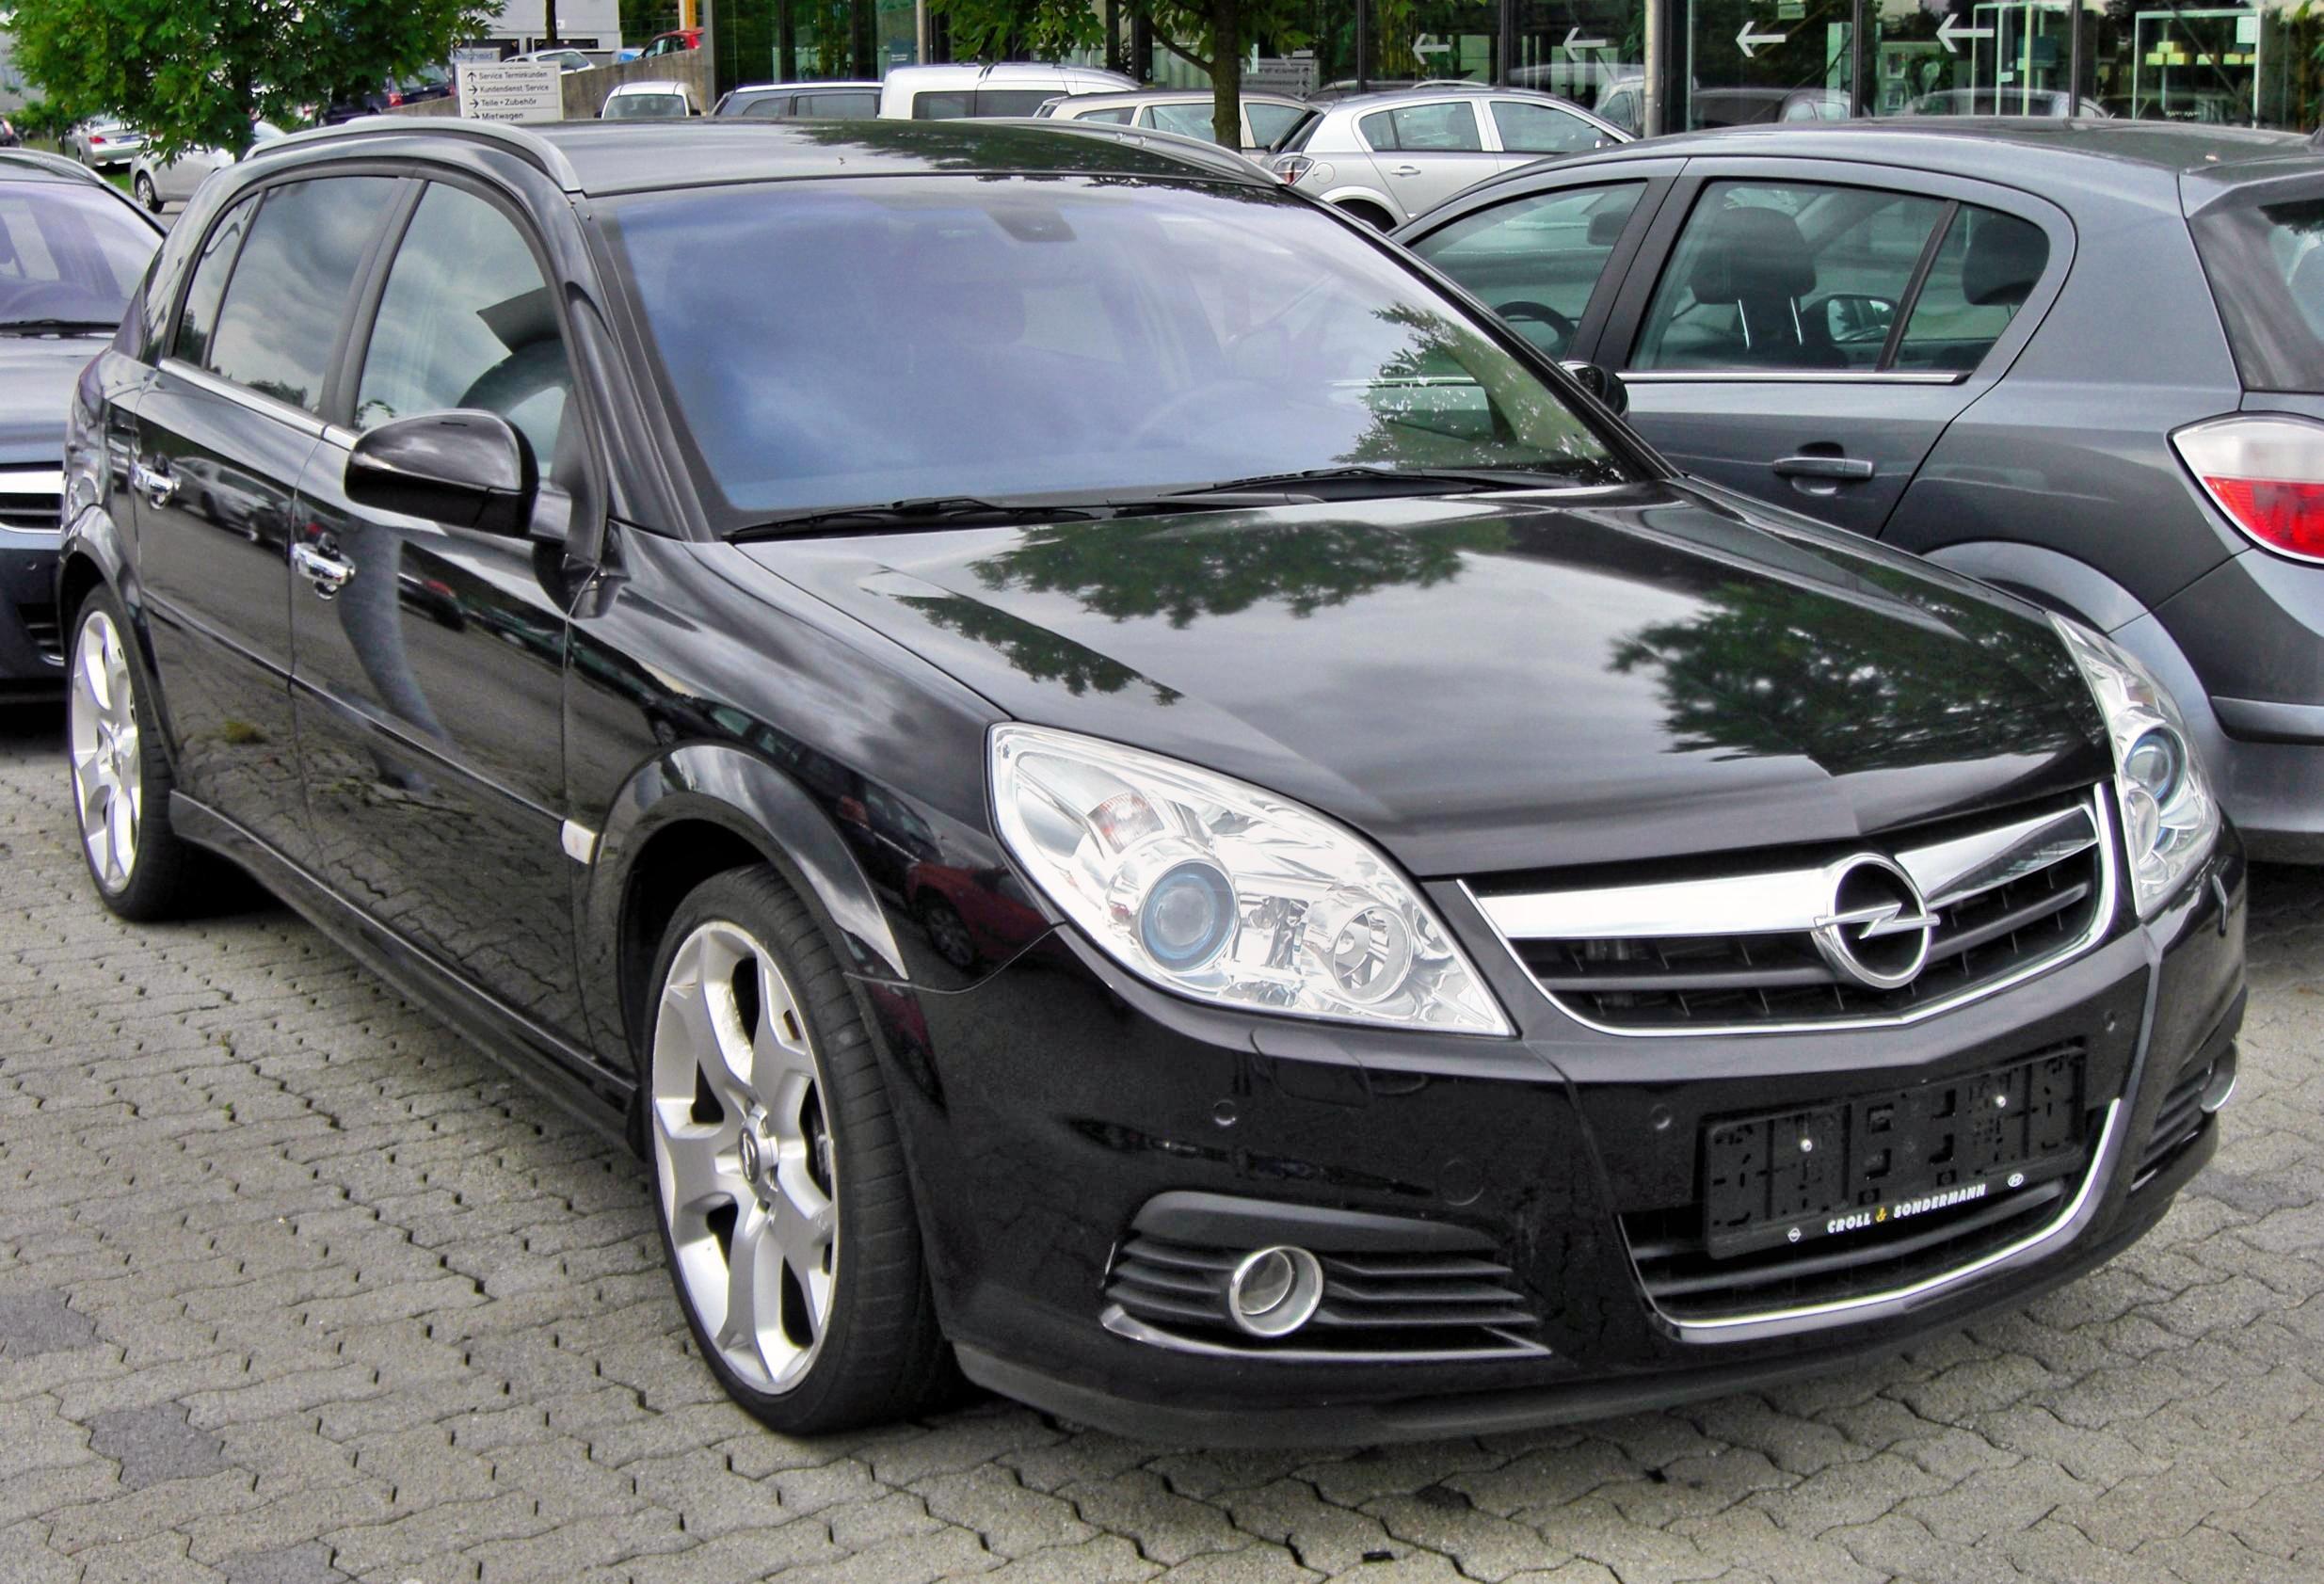 File:Opel Vectra C OPC-Line.jpg - Wikimedia Commons